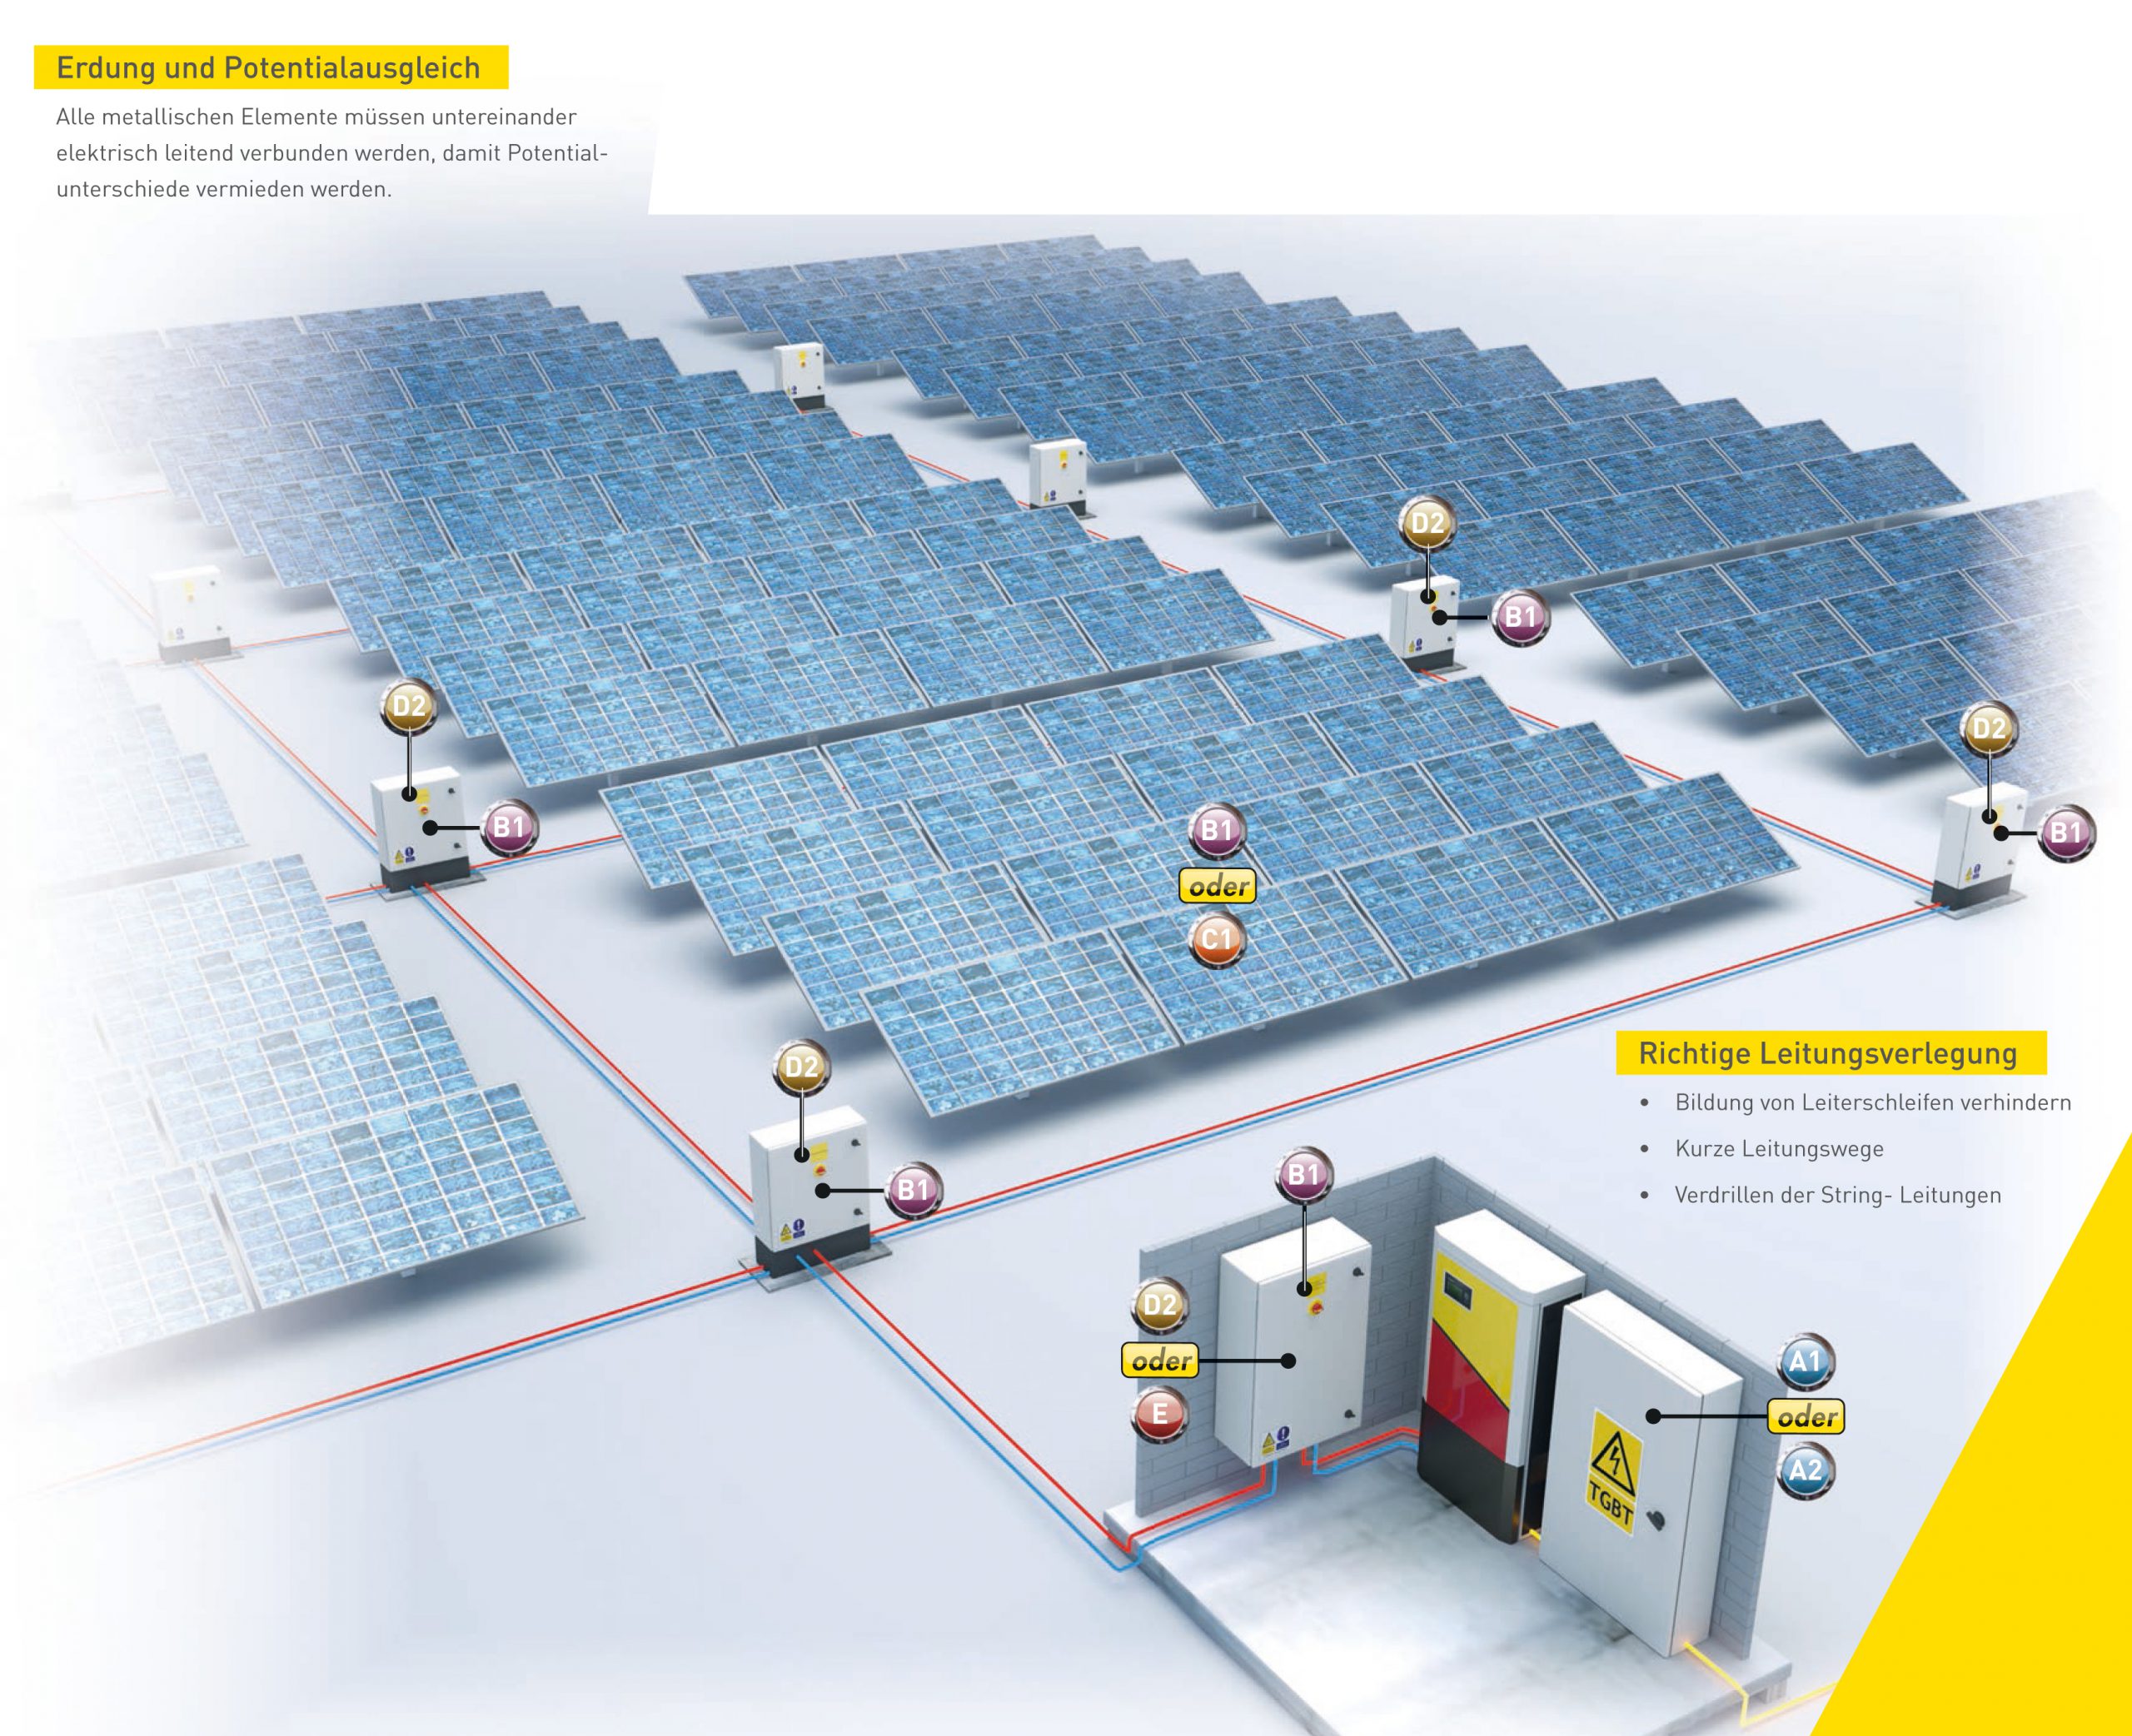 Überspannungsschutz für Photovoltaikanlagen - KESS Power Solutions